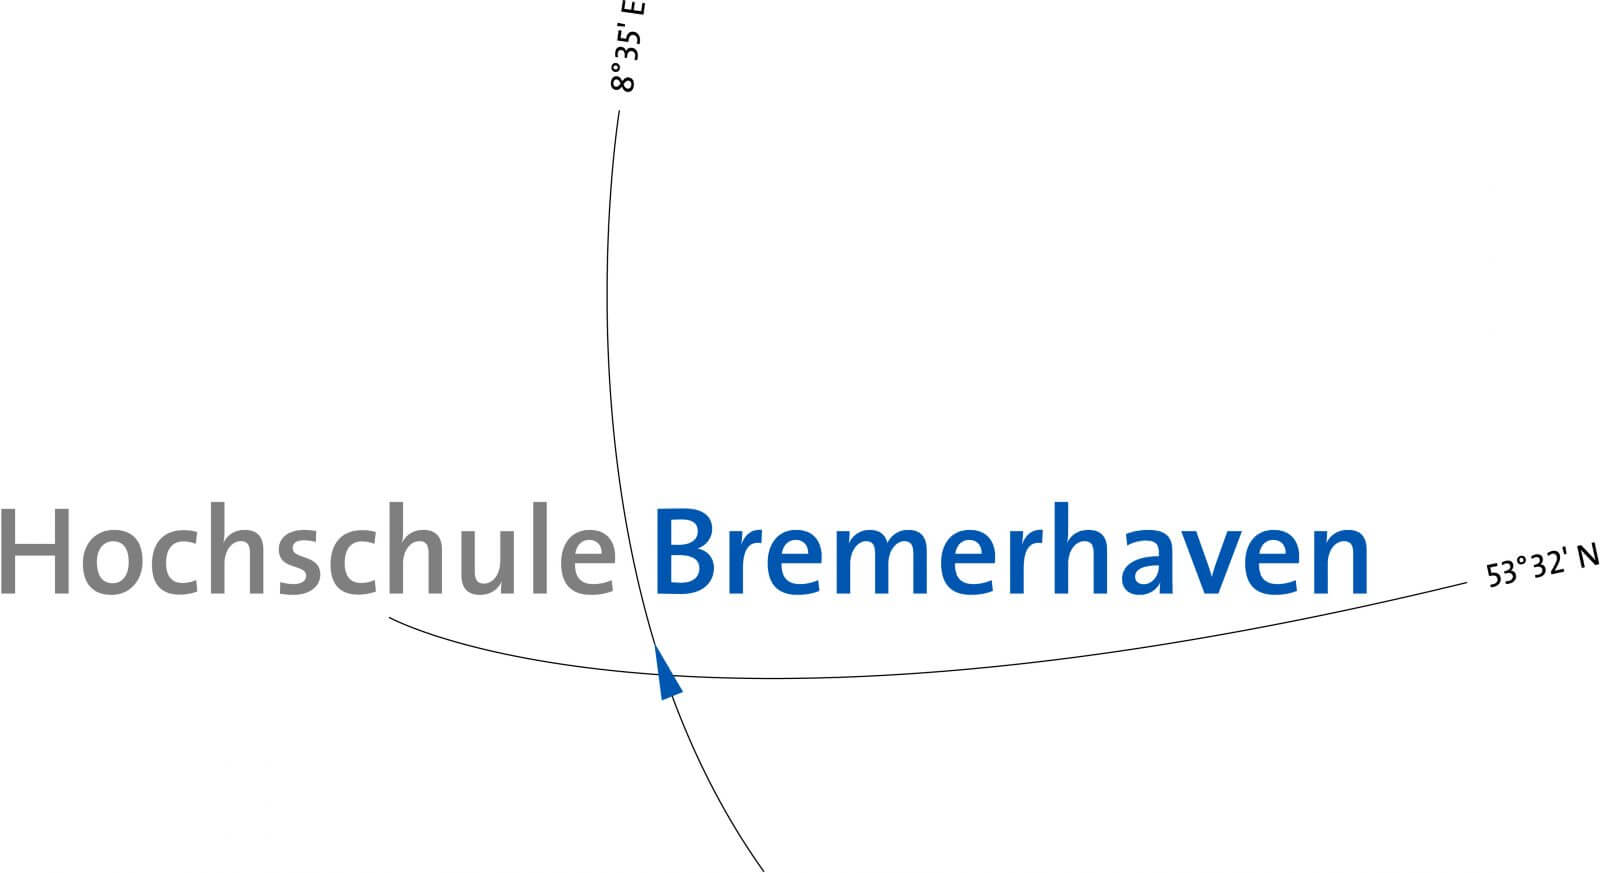 HS Bremerhaven